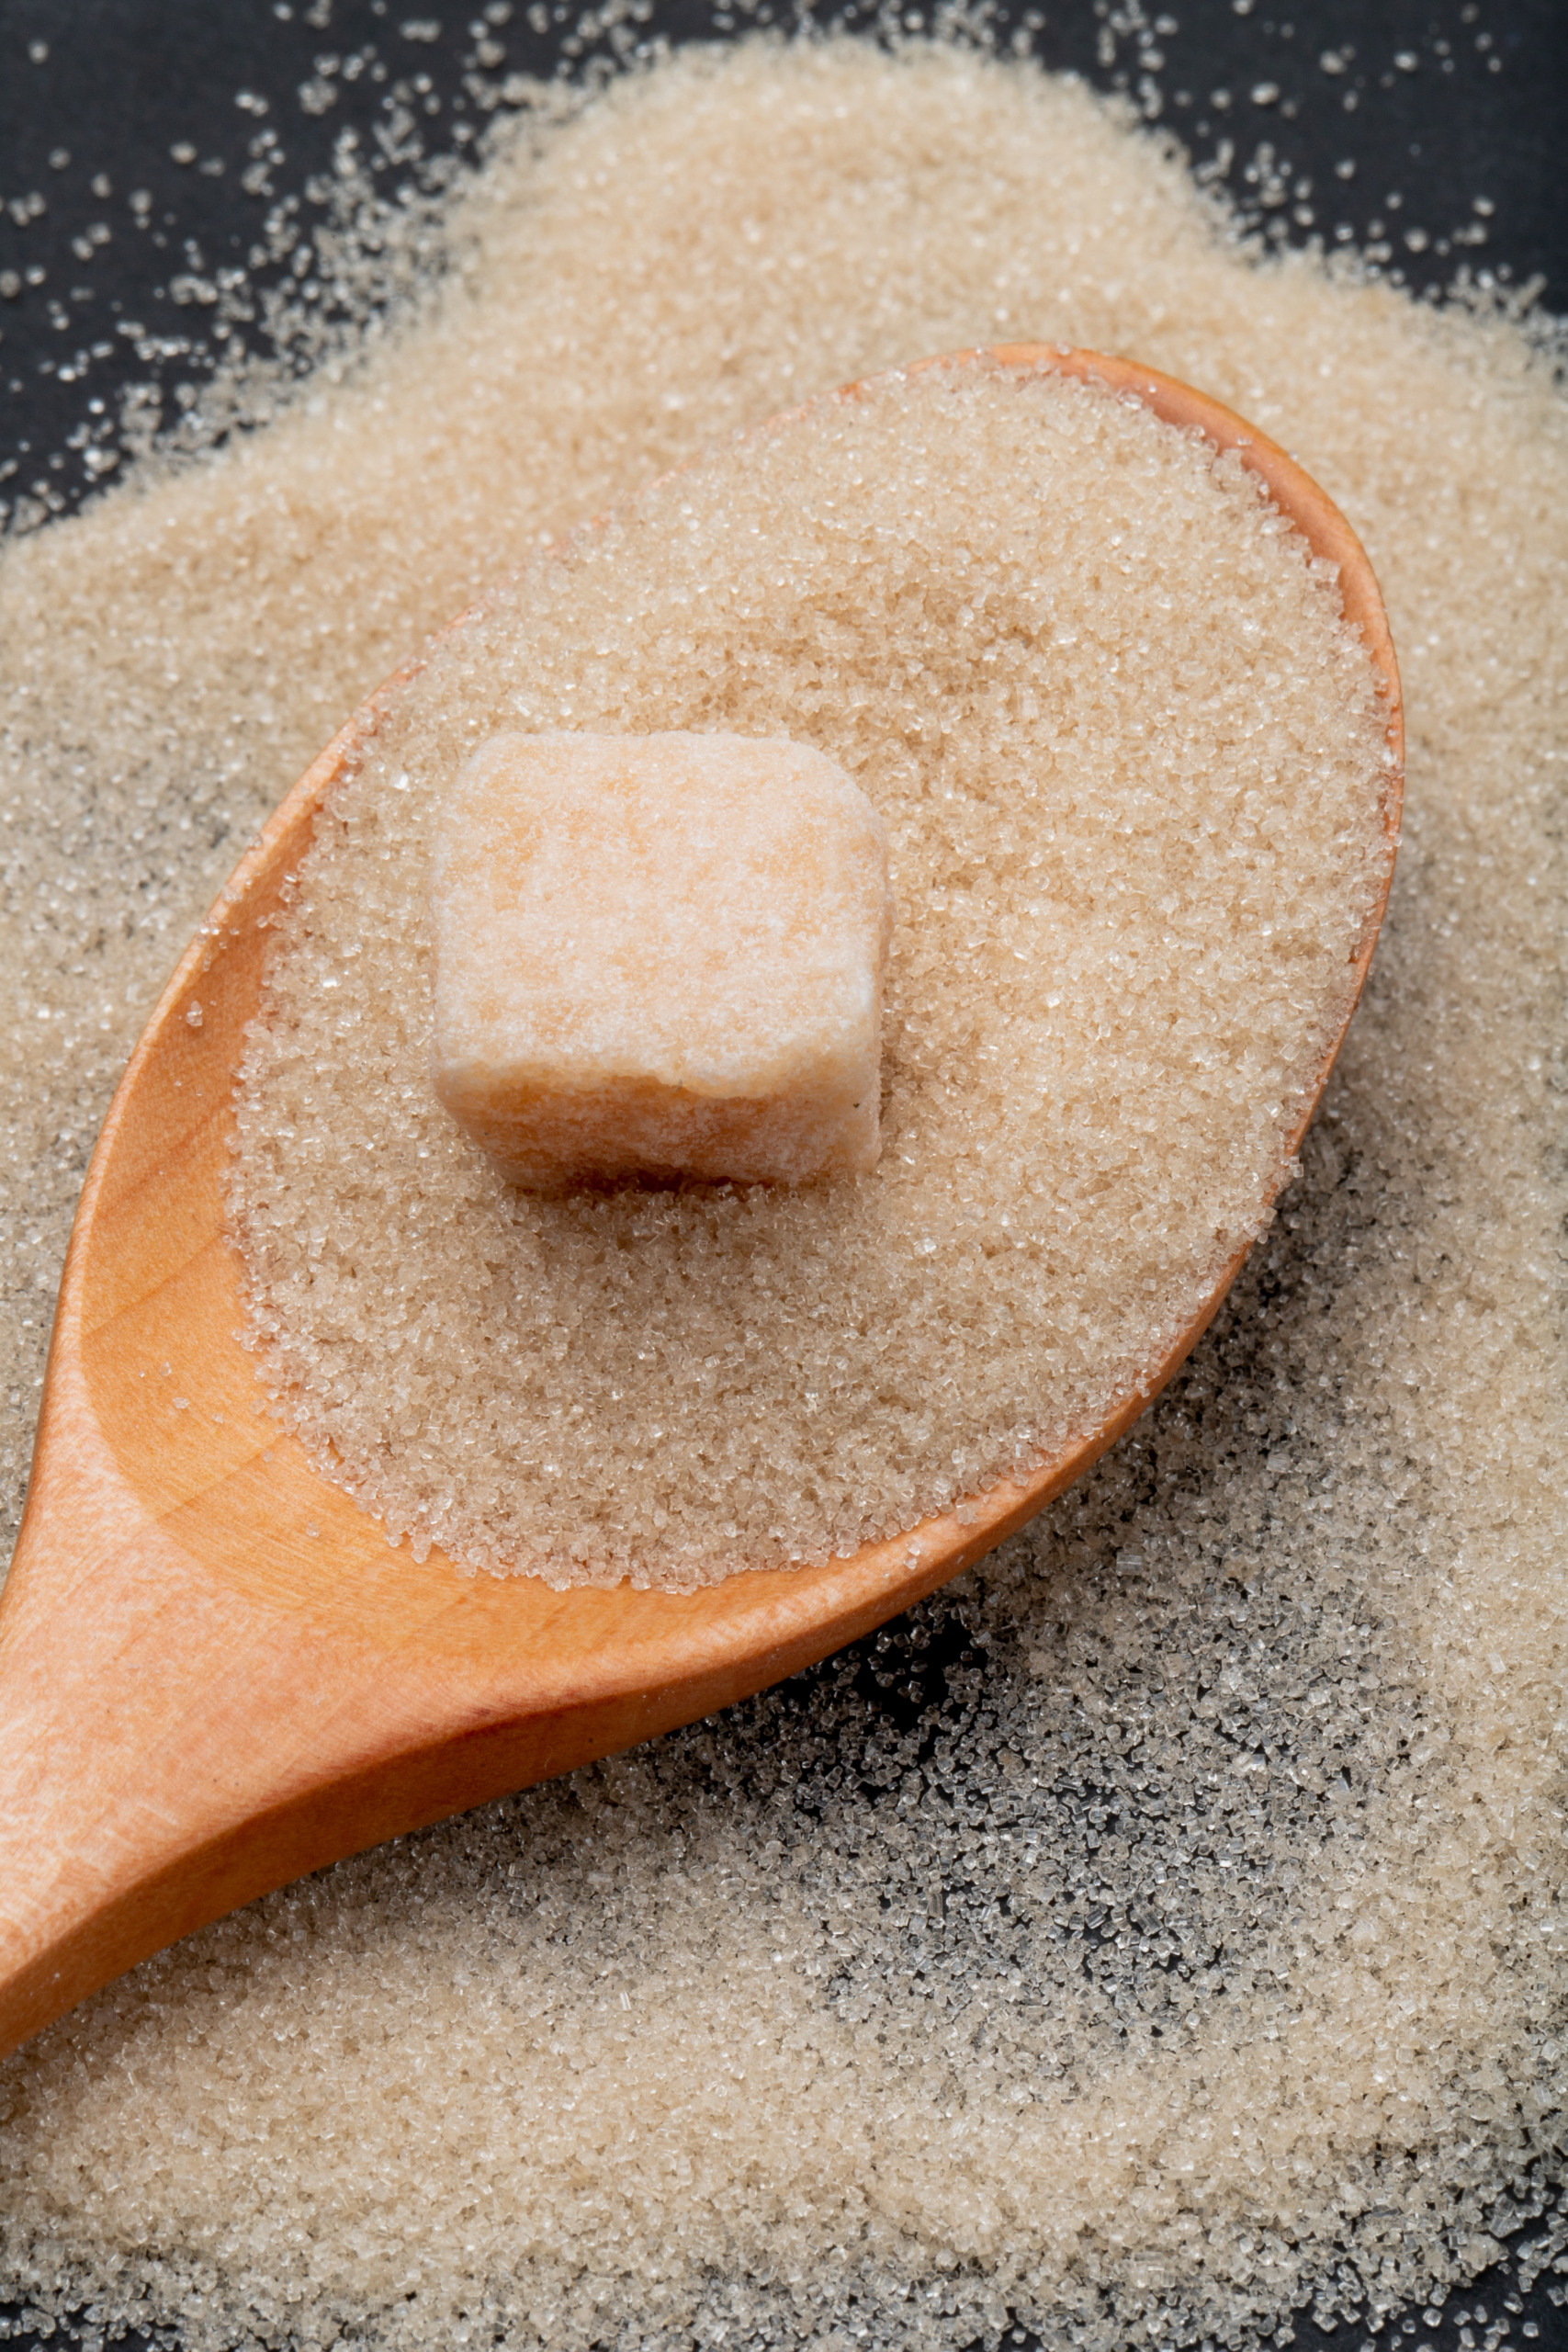 Produção de açúcar adoçante totaliza 42,24 milhões de toneladas